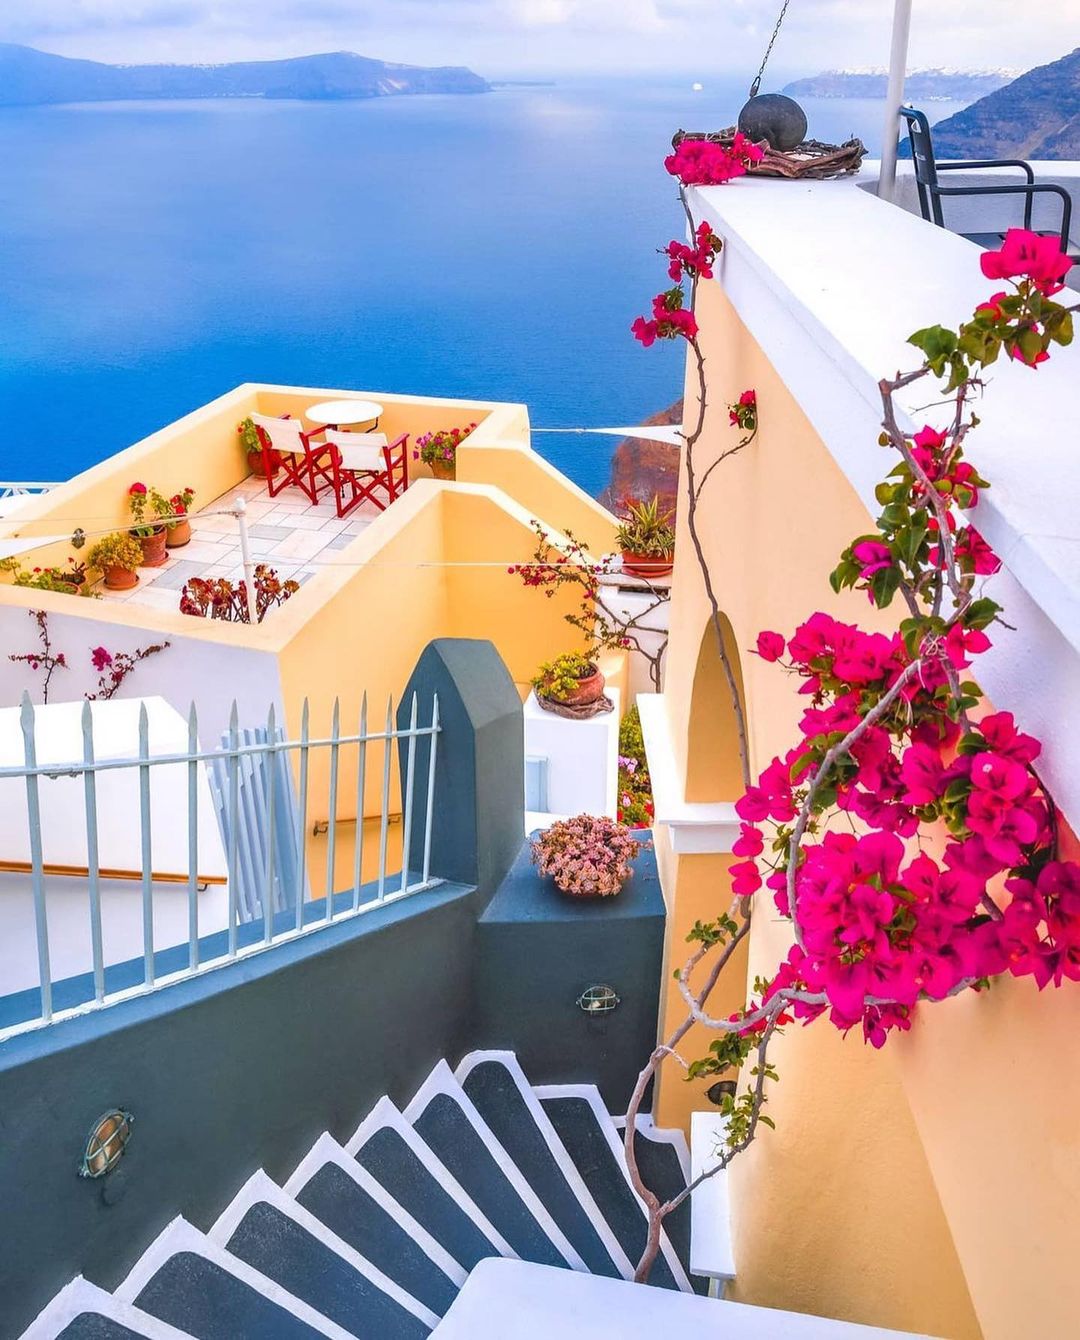 Beautiful photos of Santorini, Greece.